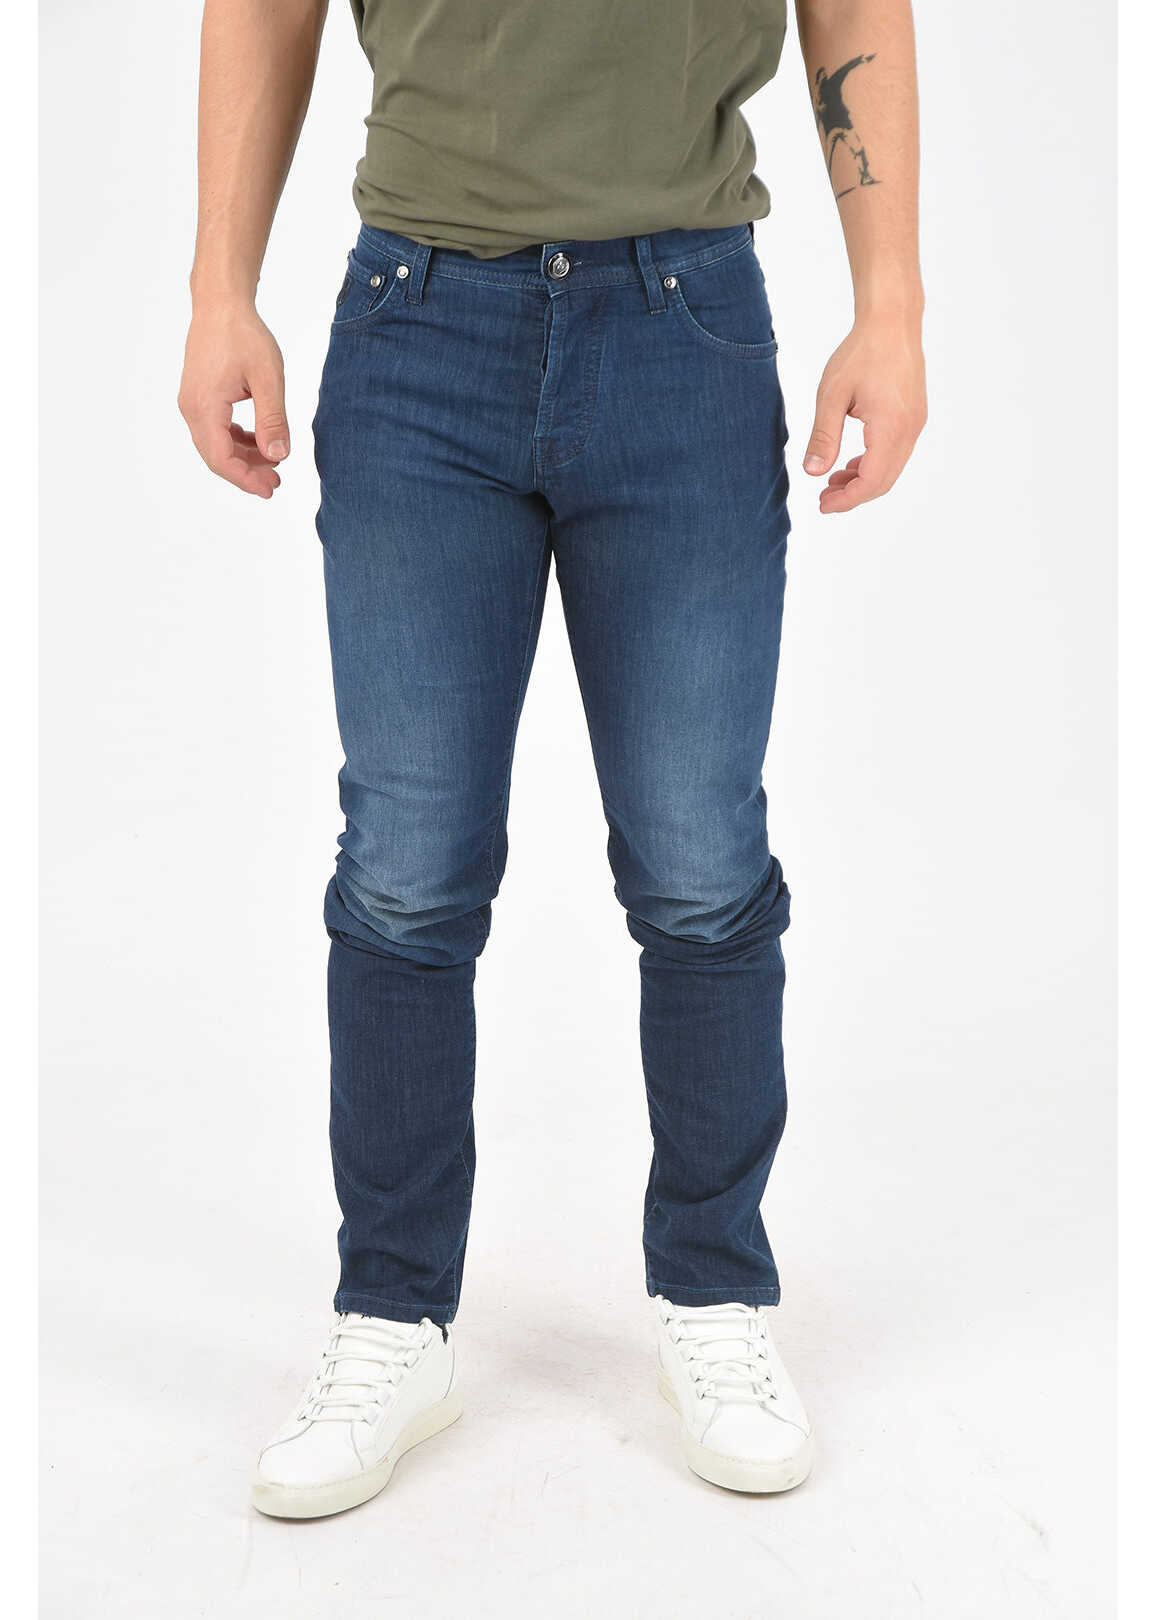 CORNELIANI Id Luxury Denim Dark-Washed Jeans With 5 Pockets 17Cm Blue image20